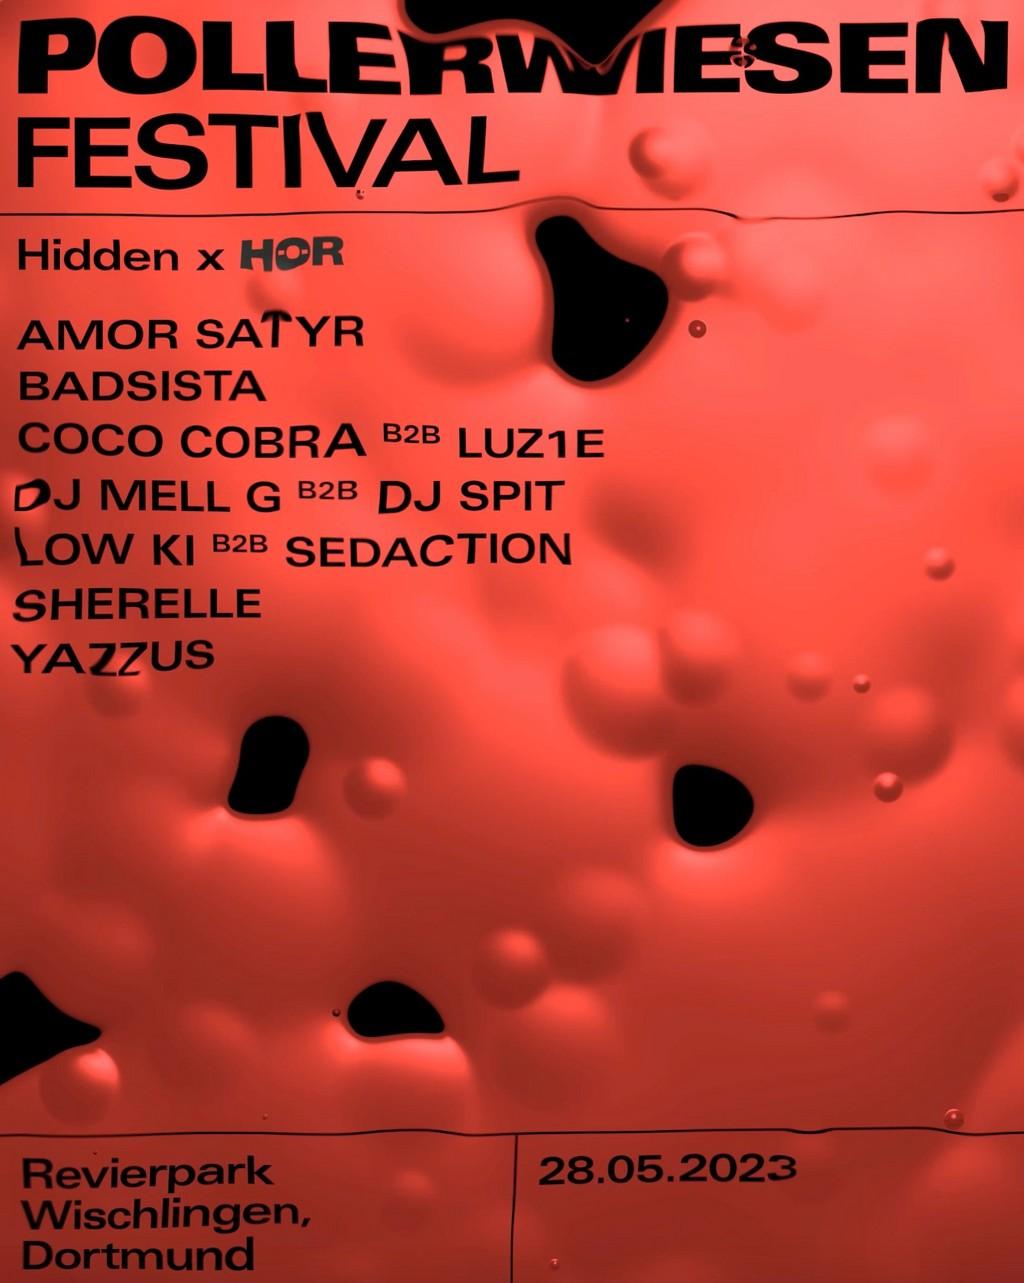 Lineup Poster PollerWiesen Festival 2023